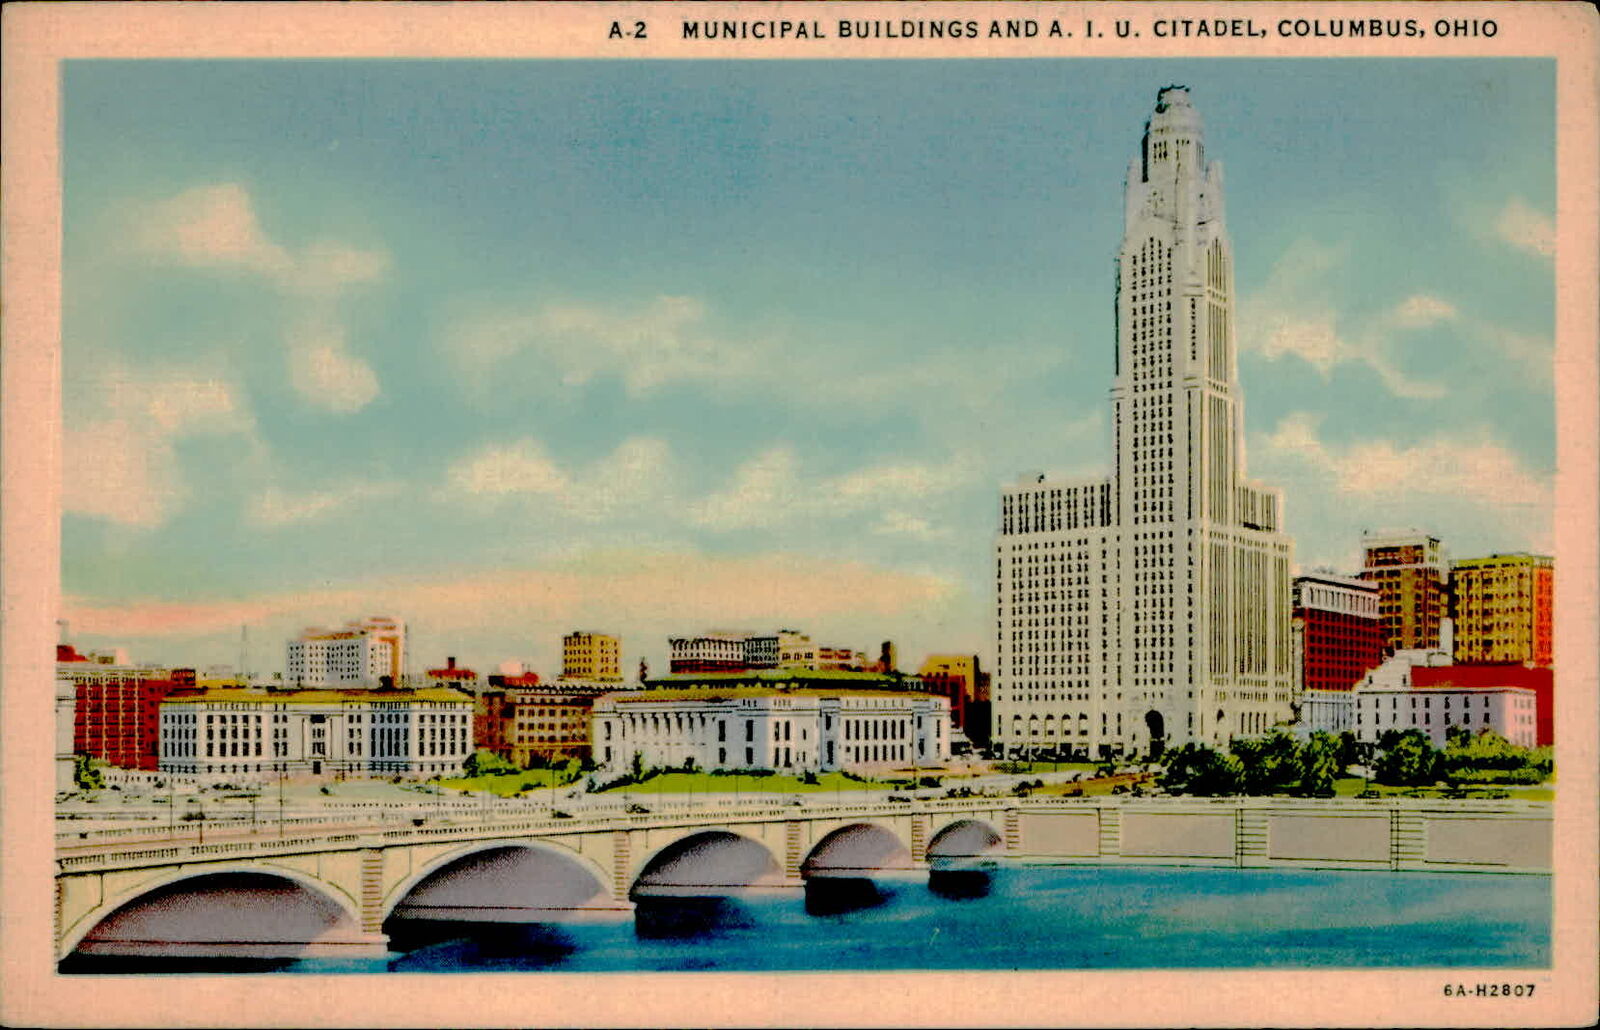 Postcard: 11 A-2 MUNICIPAL BUILDINGS AND A. I. U. CITADEL, COLUMBUS, O